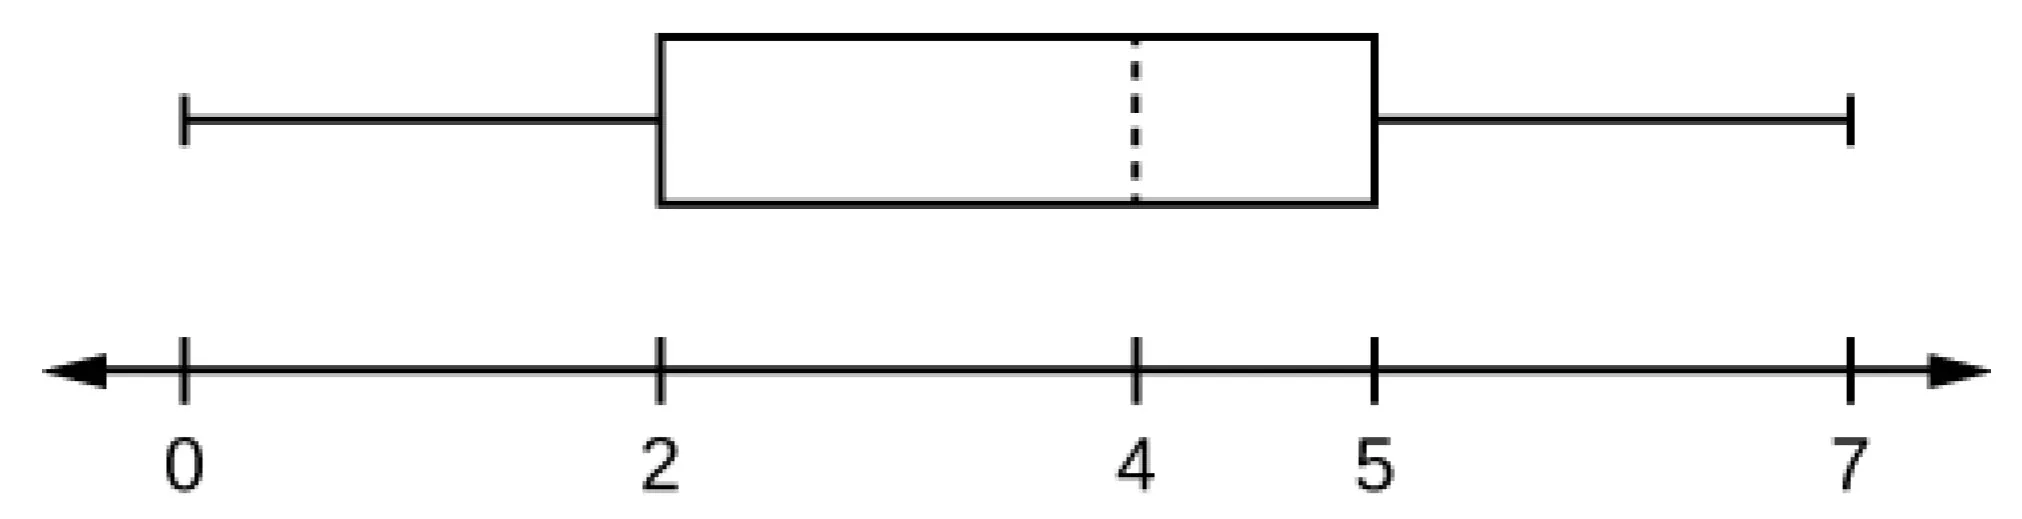 Se trata de un diagrama de caja y bigotes sobre una línea numérica de 0 a 7. El bigote izquierdo va desde el mínimo, 0, hasta el cuartil inferior, 2. La caja va desde el cuartil inferior, 2, hasta el cuartil superior, 5. Una línea discontinua marca la mediana en 4. El bigote de la derecha va de 5 al valor máximo de 7.